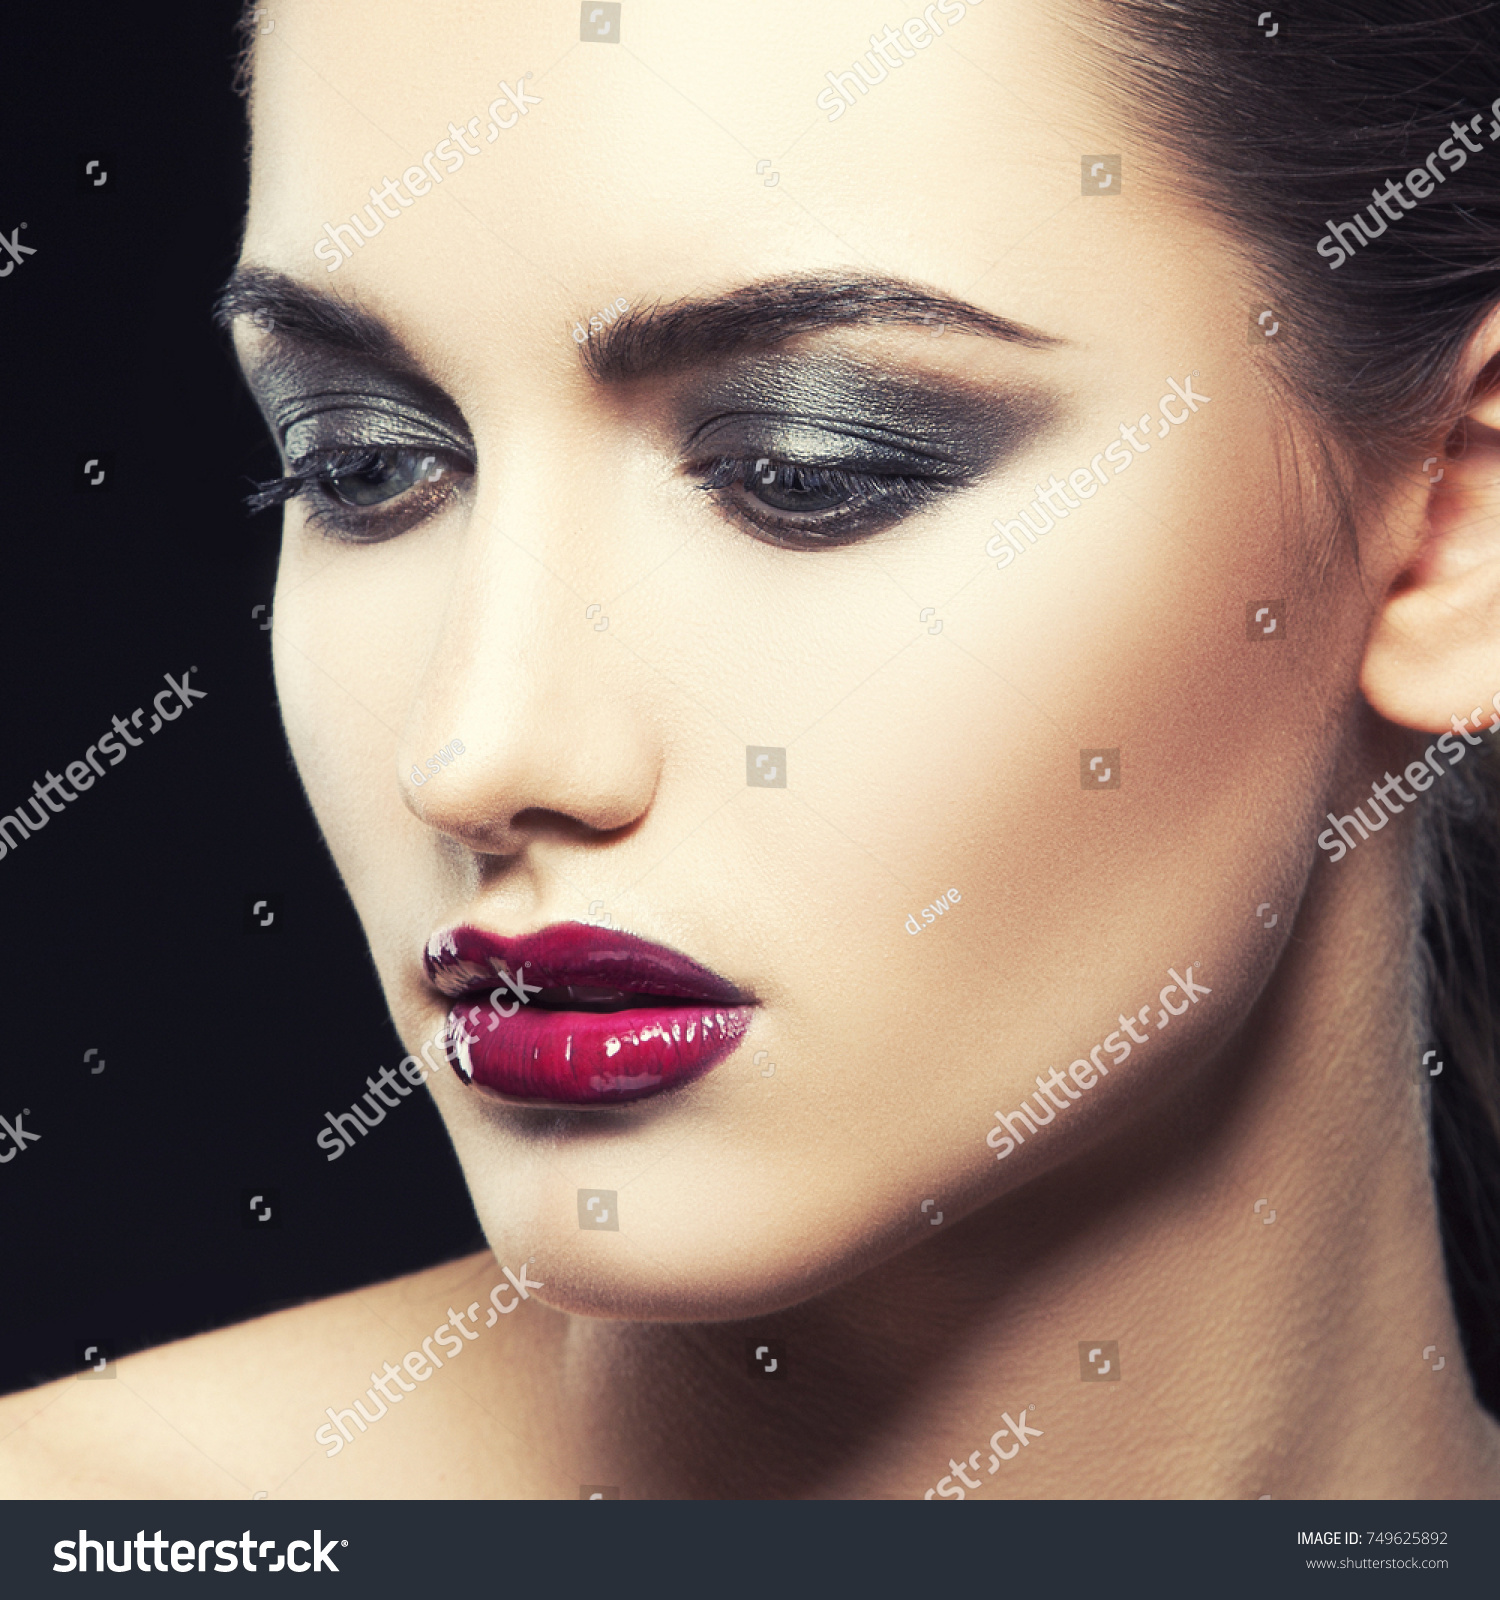 Closeup Beauty Face Girl Model Intensive Stok Fotoğrafı 749625892 Shutterstock 0491